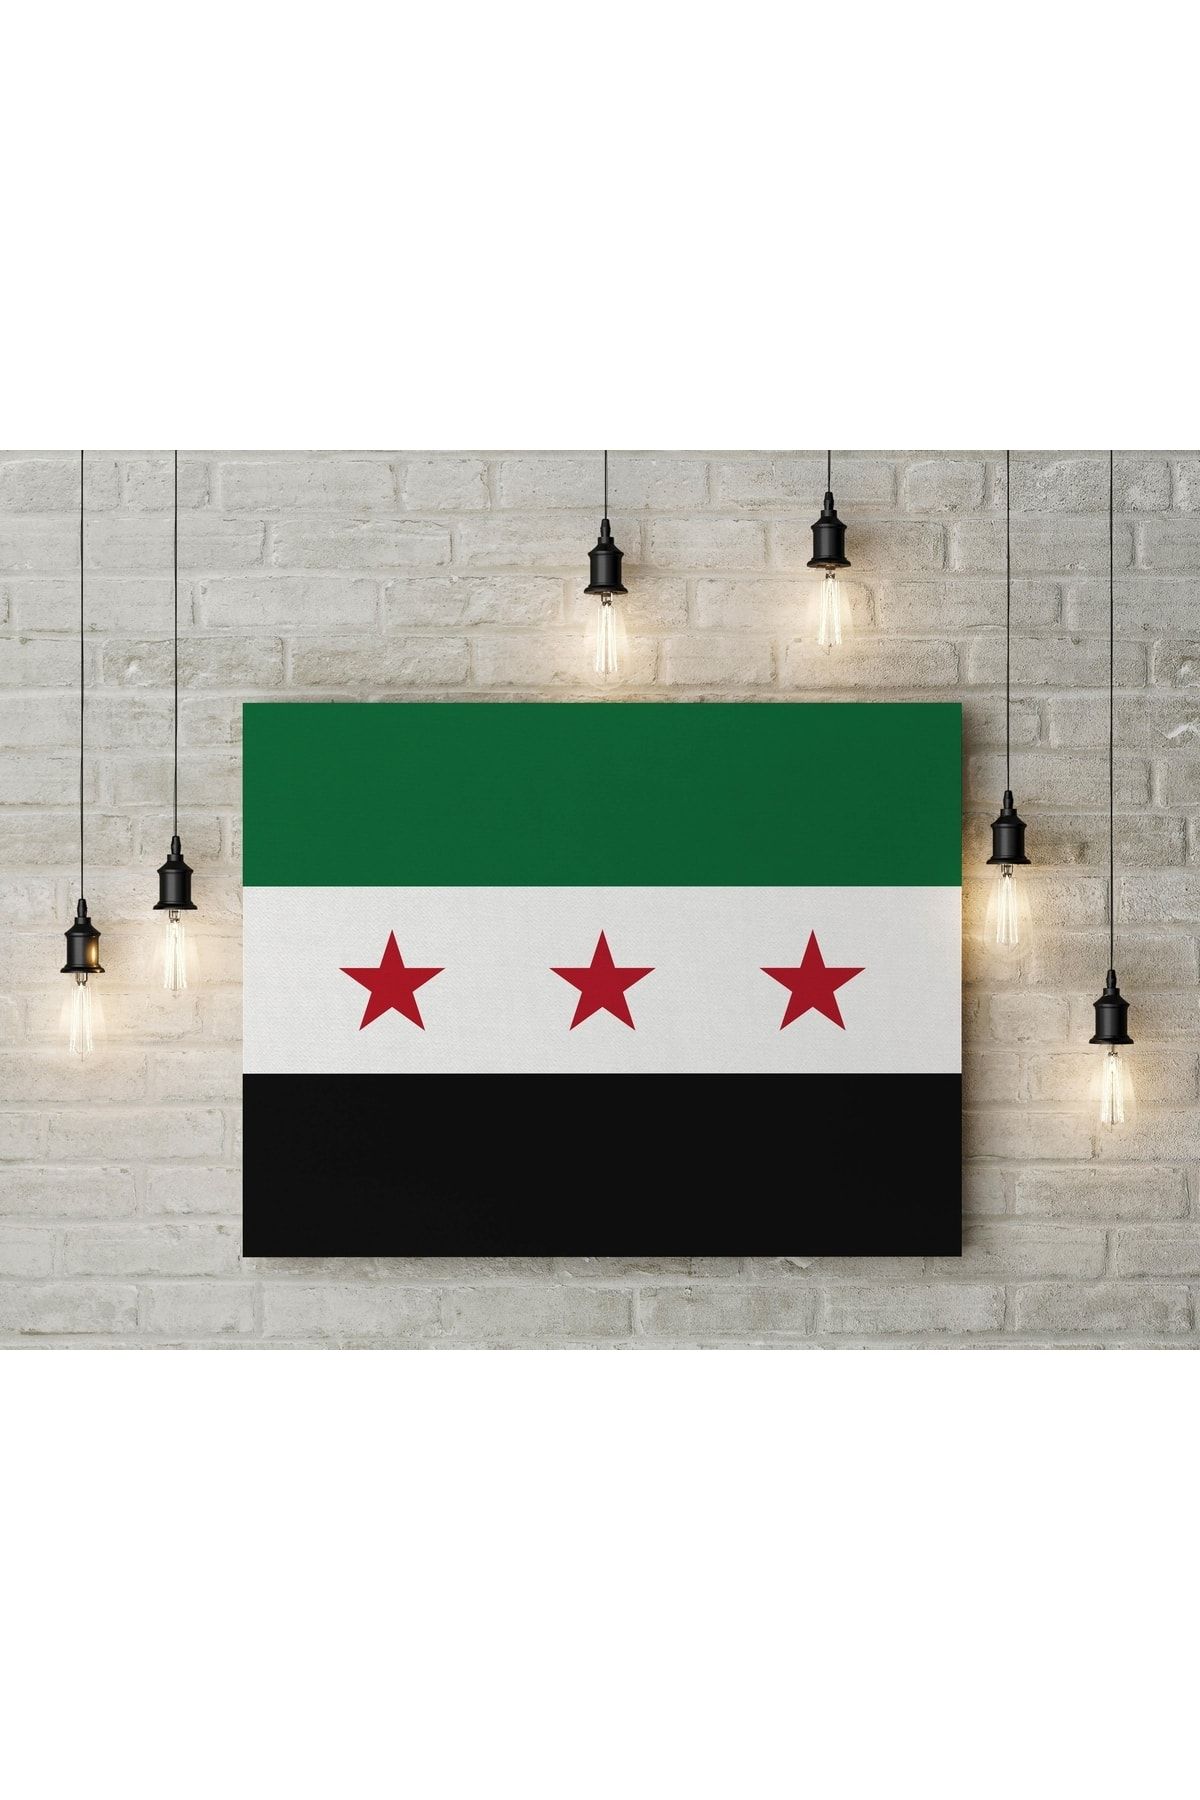 Saturn Özgür Suriye Ordusu Bayrağı Kanvas Tablo 40x55cm Öso Bayrağı Dekoratif Tablo